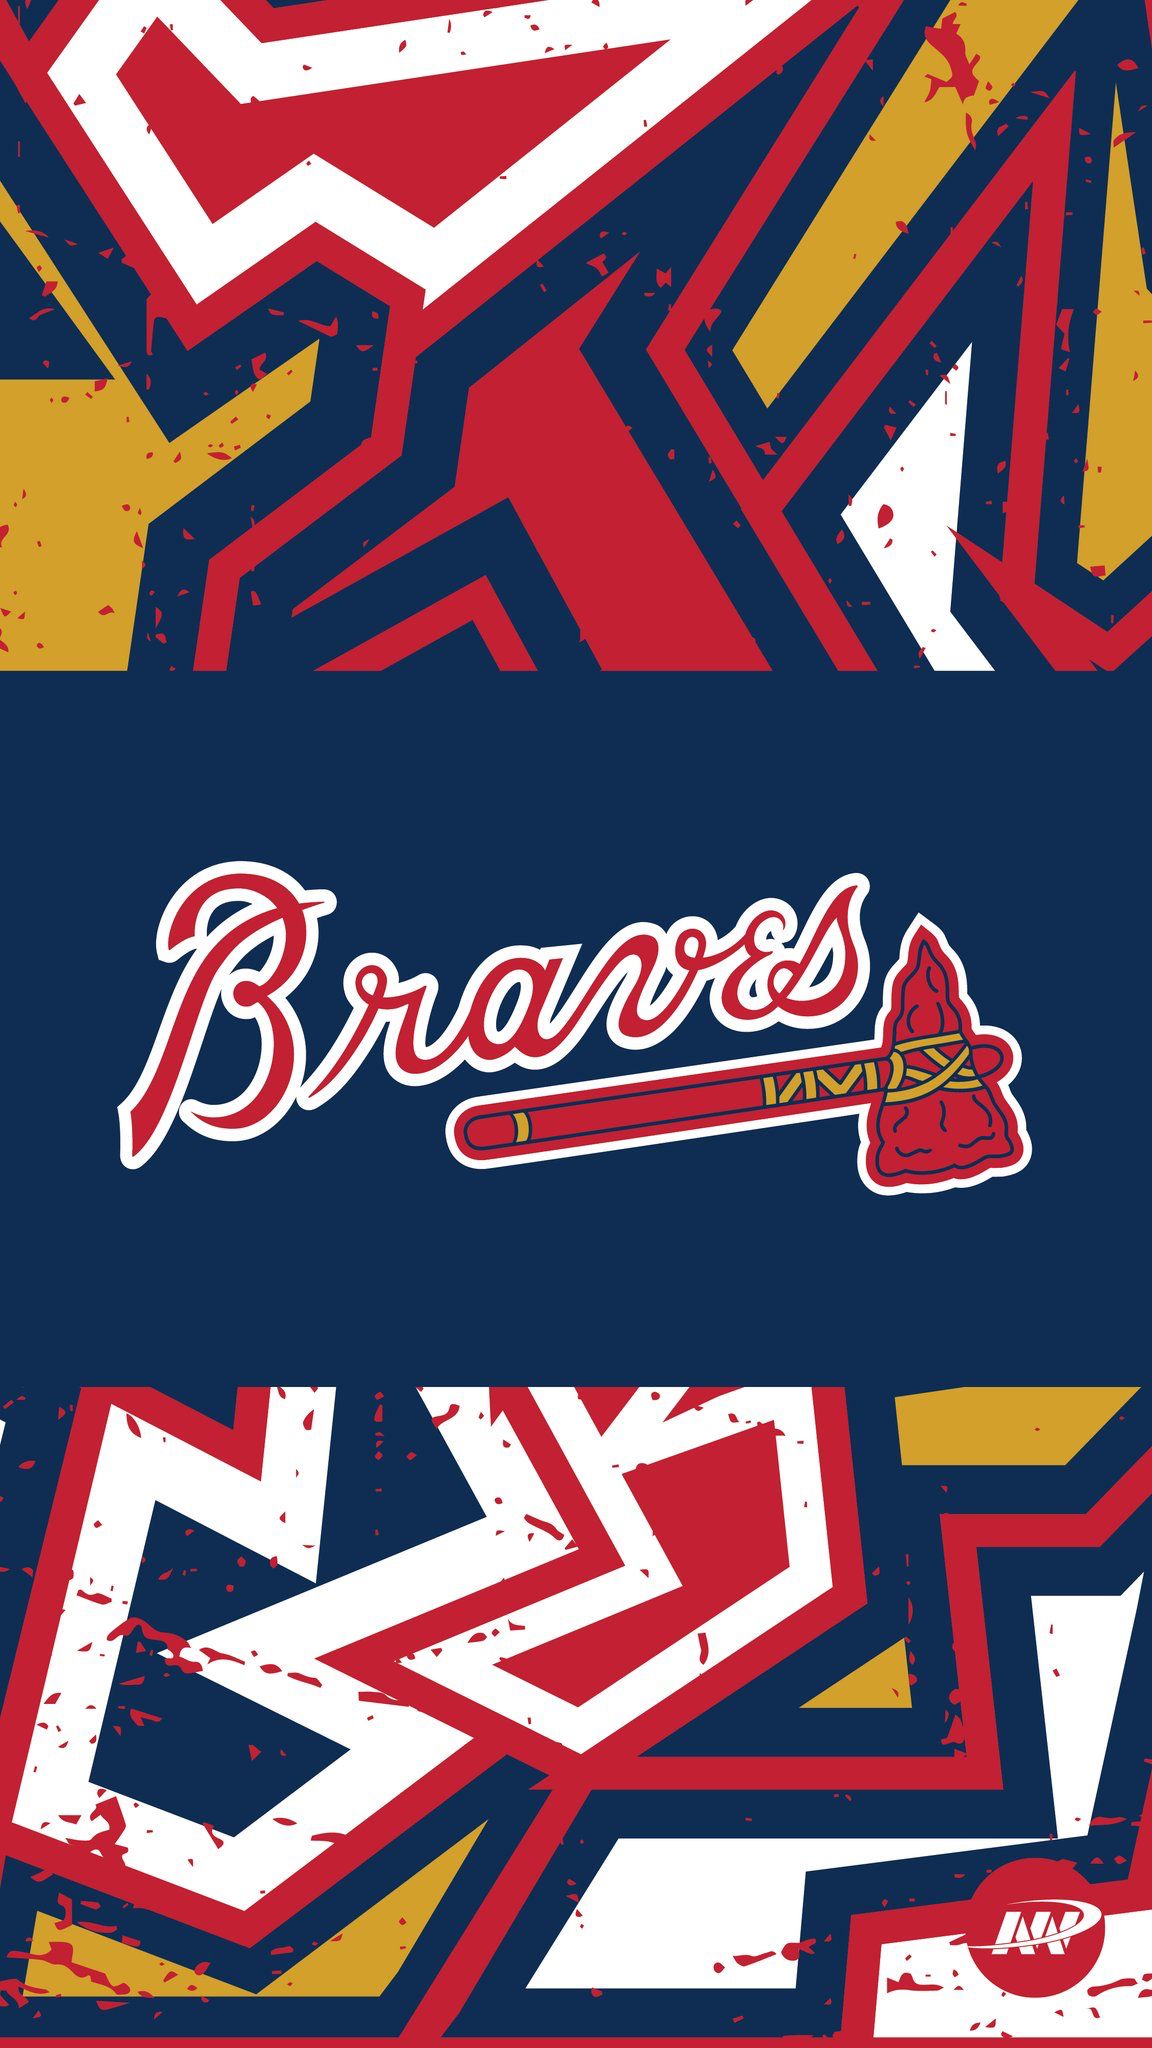 Atlanta Braves - New wallpapers for #BravesST! #ForTheA